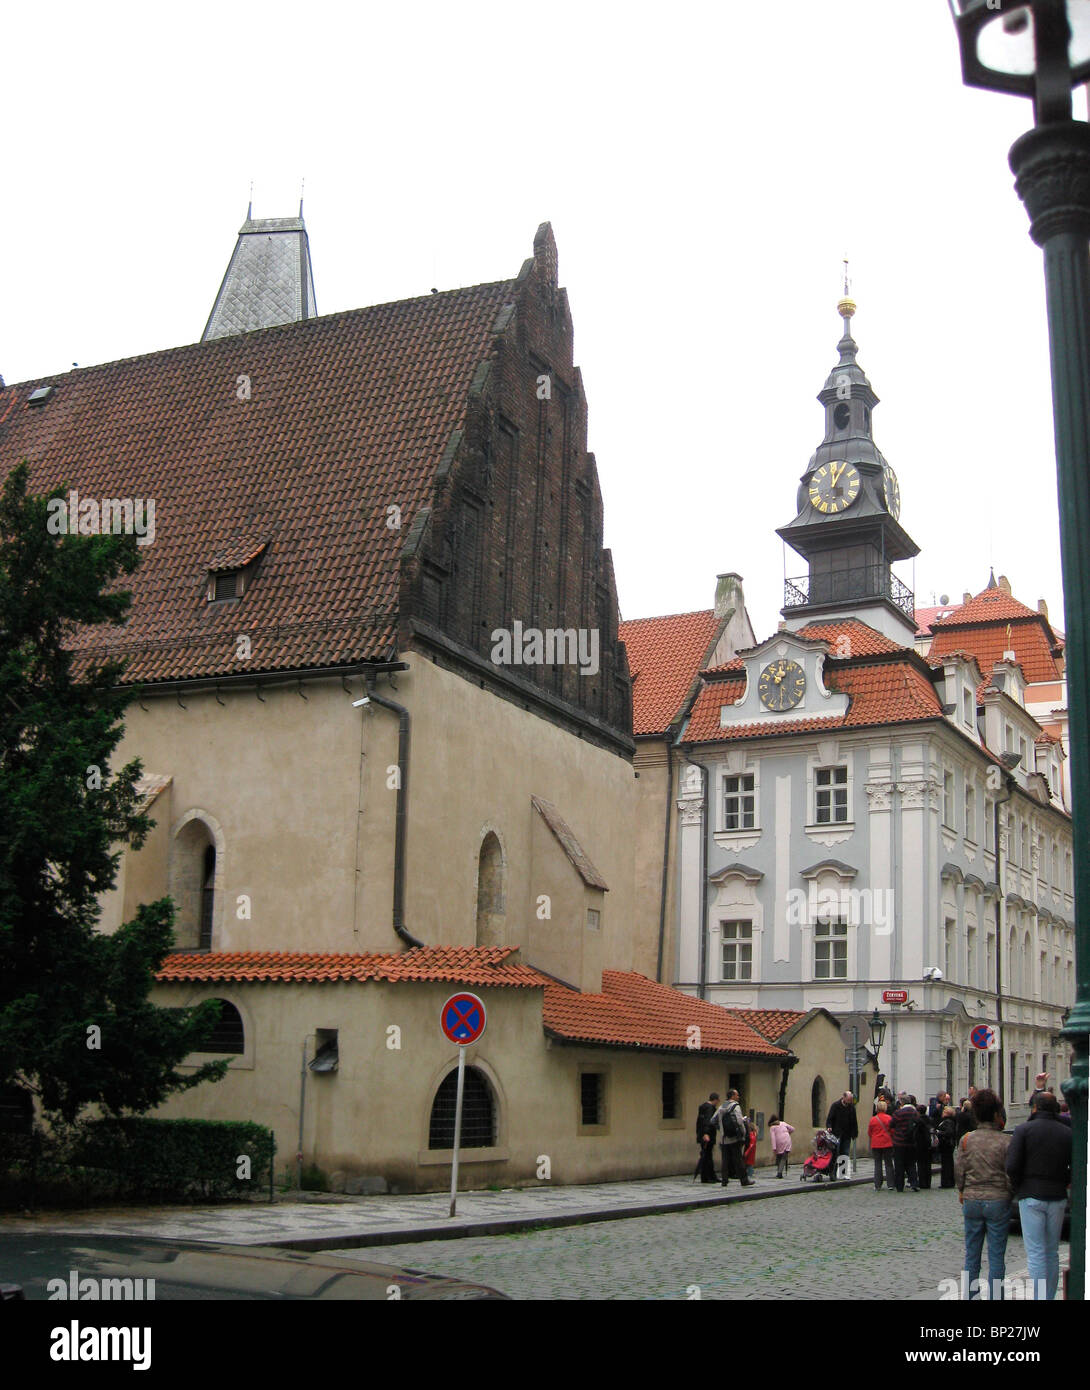 ALT-NOY (vecchia-nuova) Sinagoga di Praga risalente al 14TH. C. È una delle più antiche sinagoghe IN EUROPA IN CUI LE PREGHIERE SONO Foto Stock